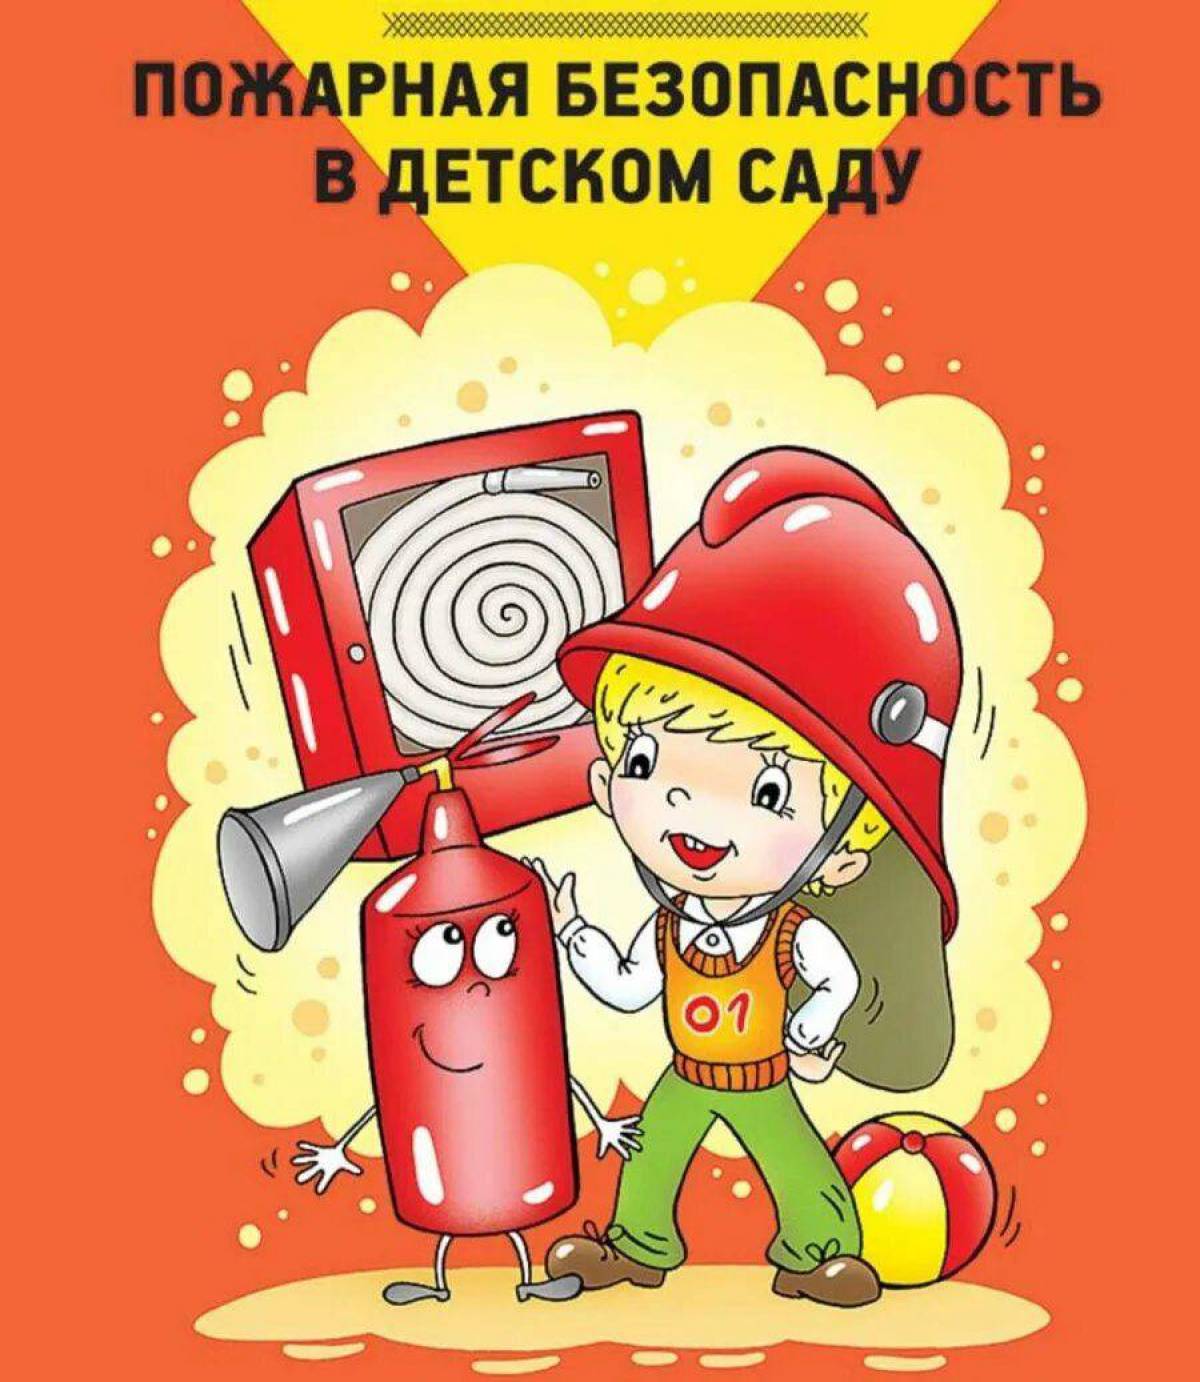 День пожарных в детском саду. Пожарная безопасность в детском саду. Пожарная безопасность для детей в детском саду. Пожарная безопастность. Книги для детей по пожарной безопасности в детском саду.